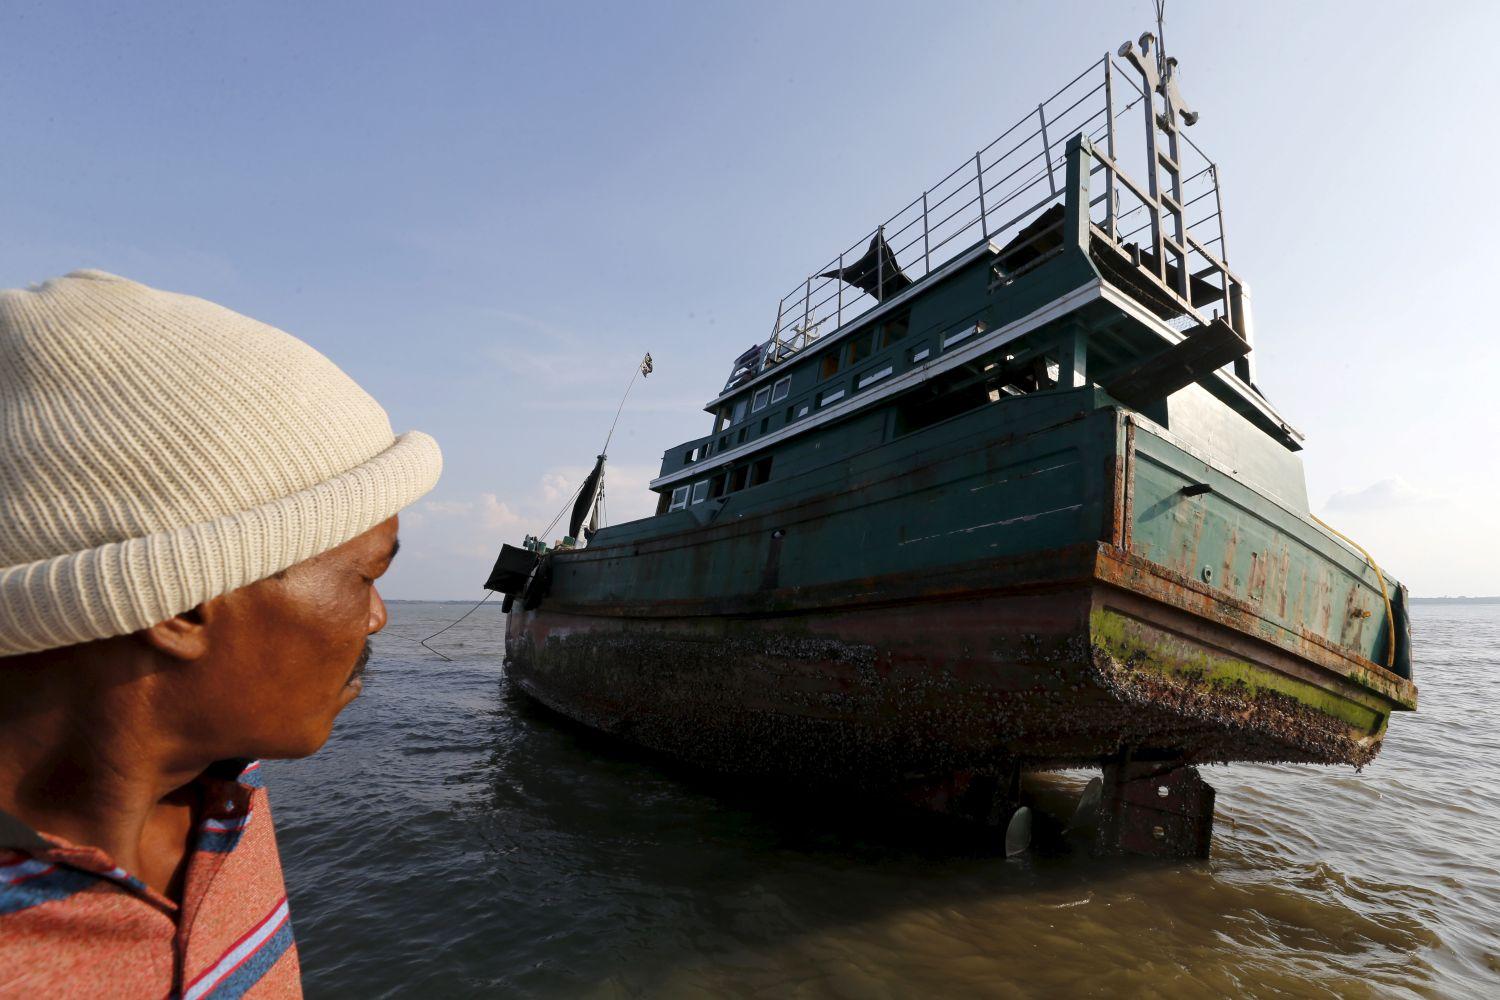 Menekülteket szállított, de ma már üresen hánykolódik az óceánban egy 'szellemhajó' Indonézia partjainál